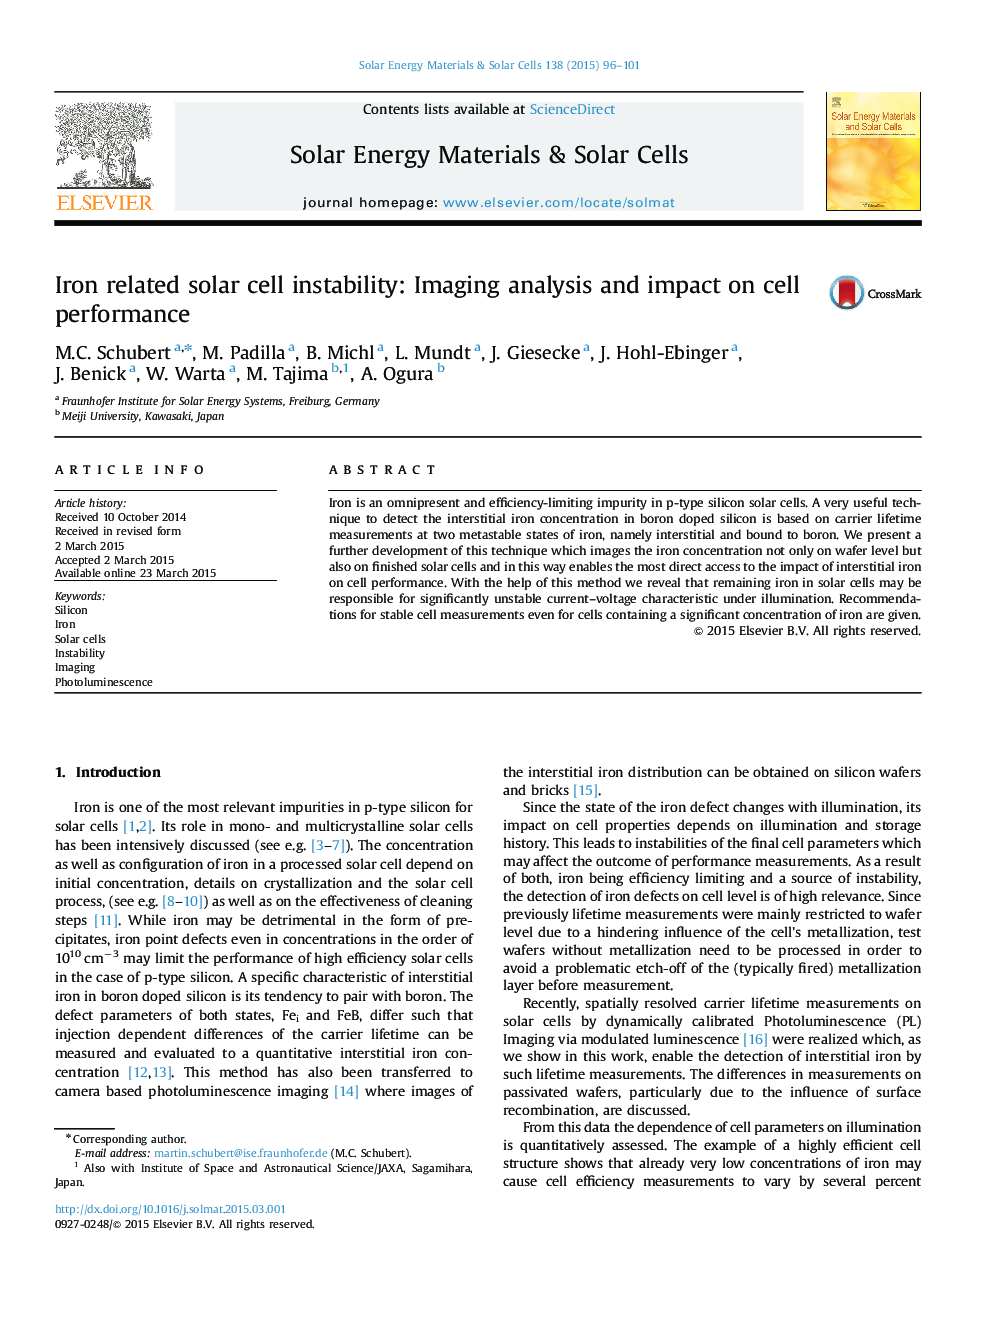 بیثباتی سلول های خورشیدی مرتبط با آهن: تجزیه و تحلیل تصویر و تاثیر بر عملکرد سلول 